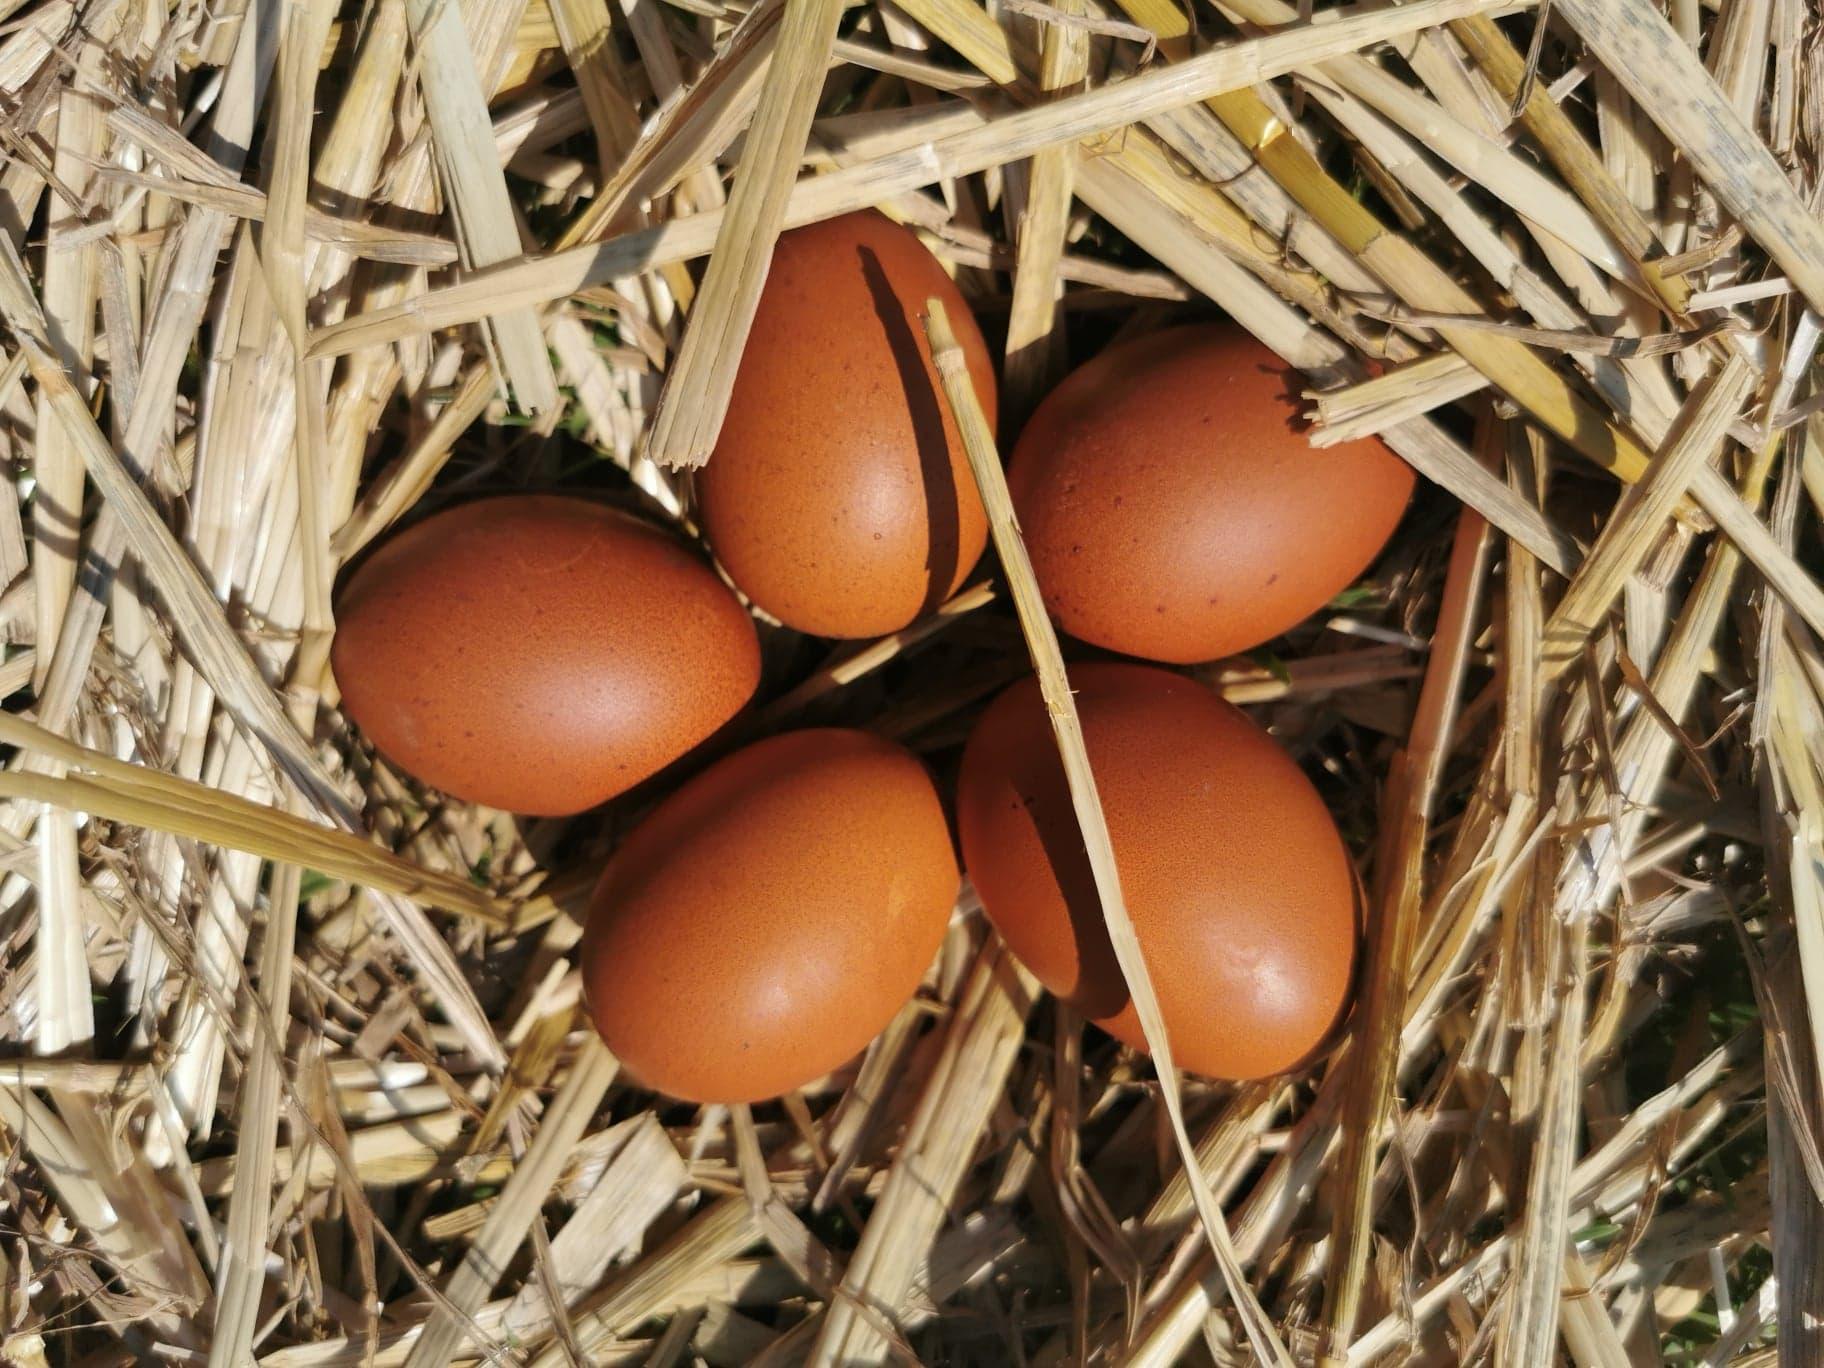 L'œuf de Marans